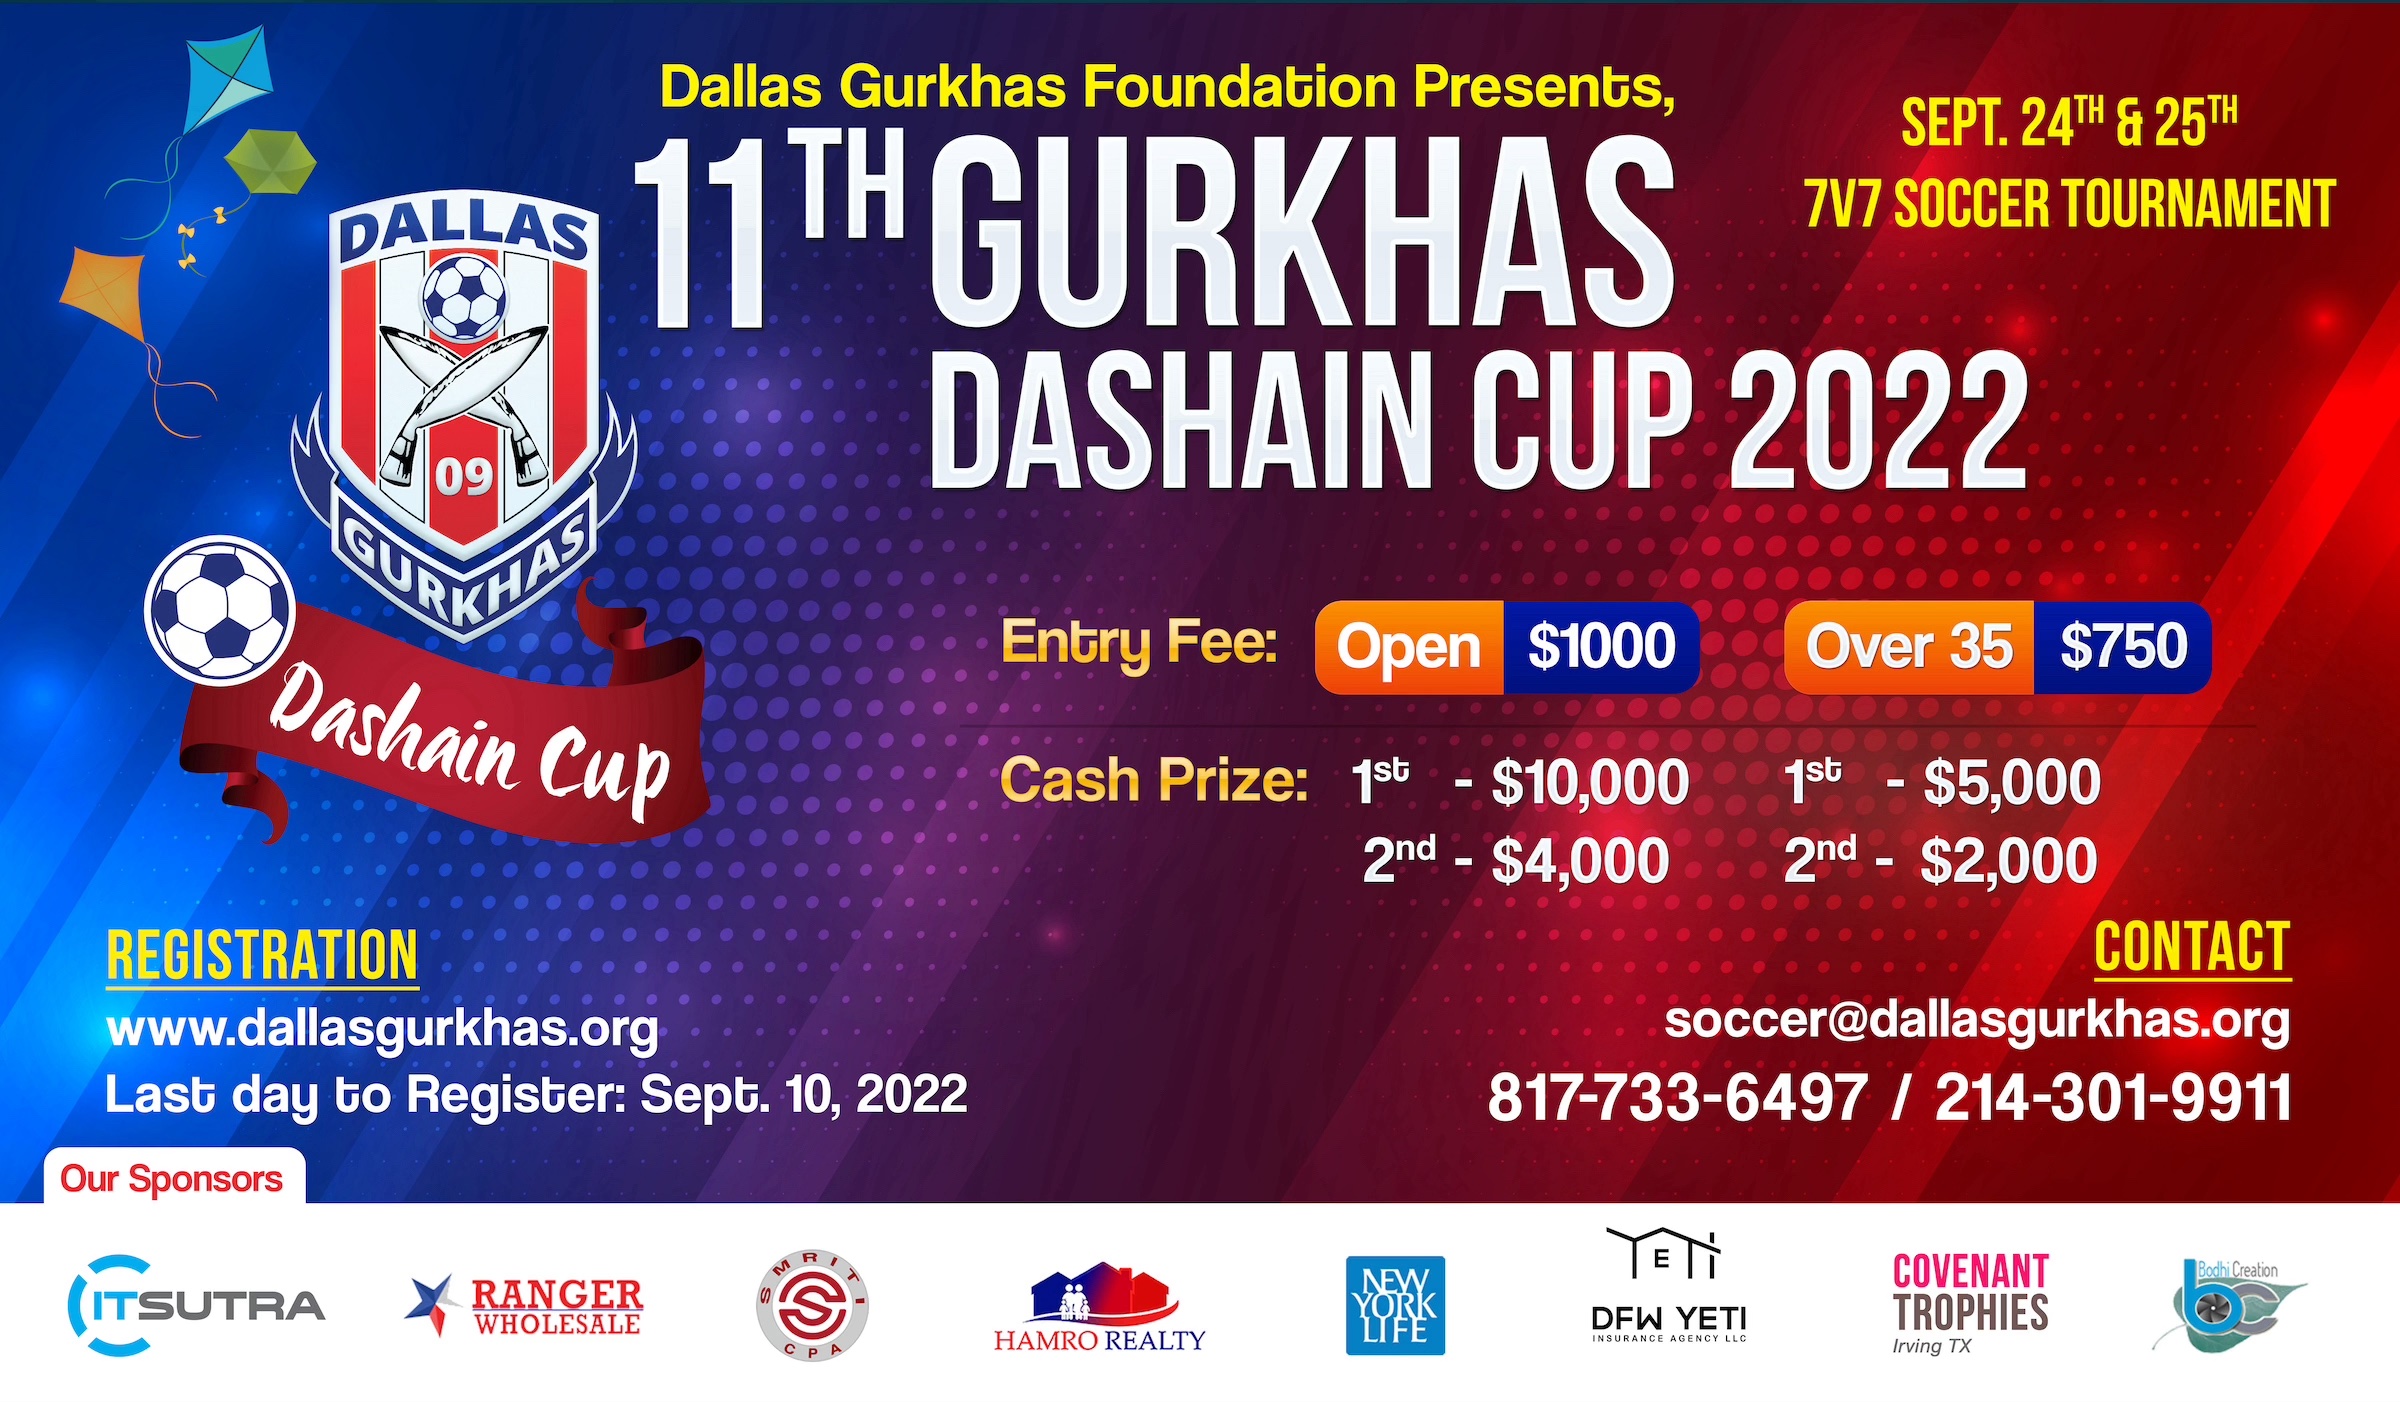 Dallas Gurkhas Foundation Dashain Cup 2022